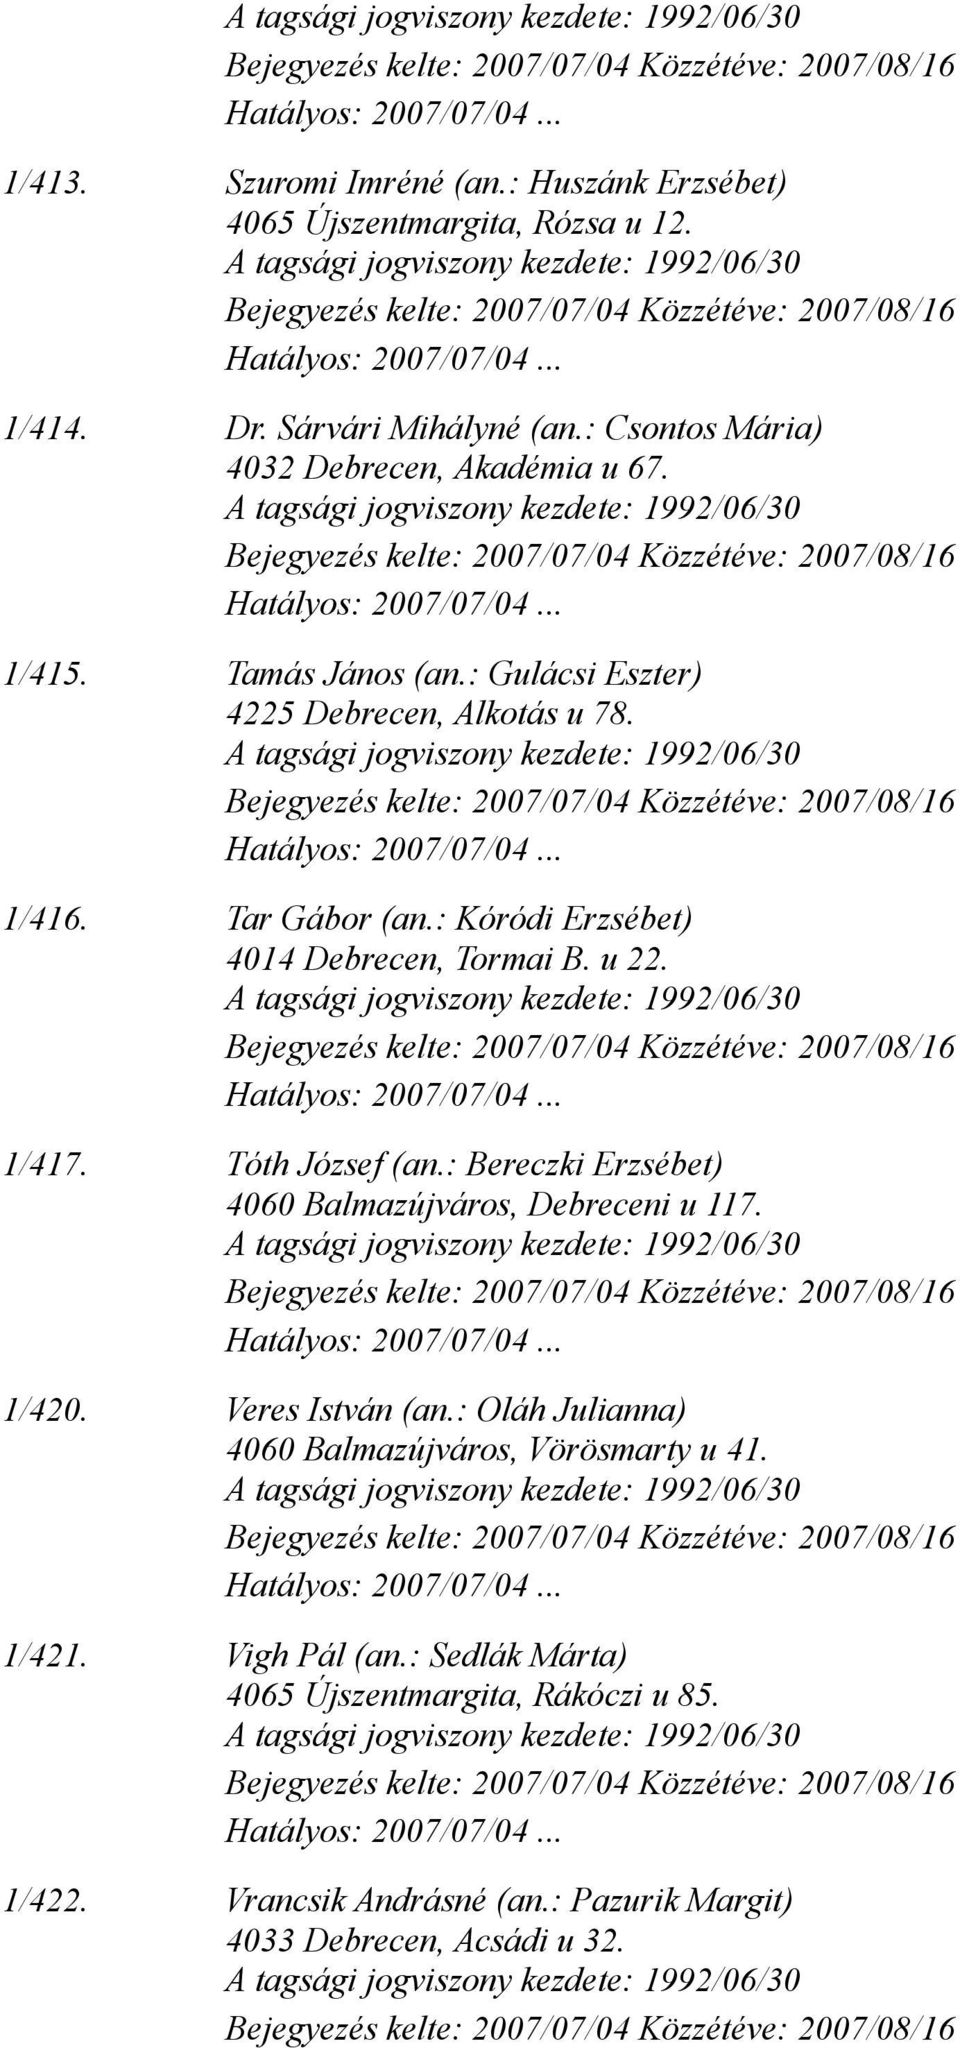 : Kóródi Erzsébet) 4014 Debrecen, Tormai B. u 22. 1/417. Tóth József (an.: Bereczki Erzsébet) 4060 Balmazújváros, Debreceni u 117. 1/420.